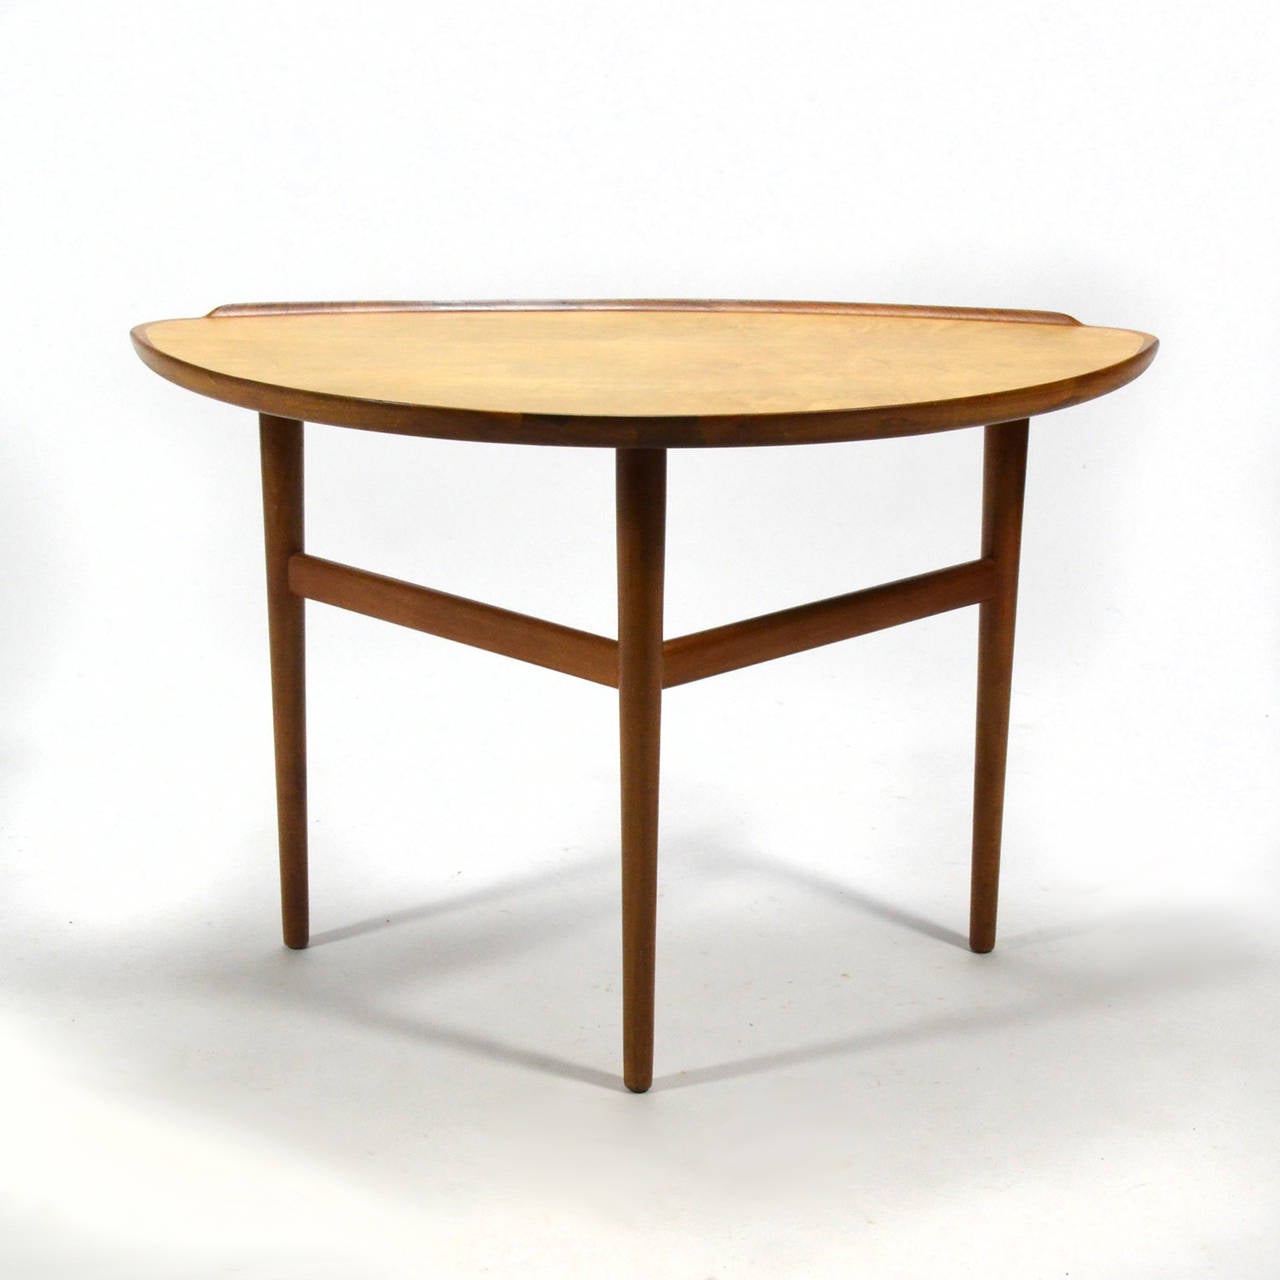 Dieser wunderschöne Tisch des dänischen Meisters Finn Juhl hat Beine aus massivem Walnussholz und eine erhöhte Lippe, die eine deltaförmige Platte aus Bergahorn umgibt. Dieser Tisch wurde auf dem Höhepunkt seiner Kreativität entworfen und ist ein